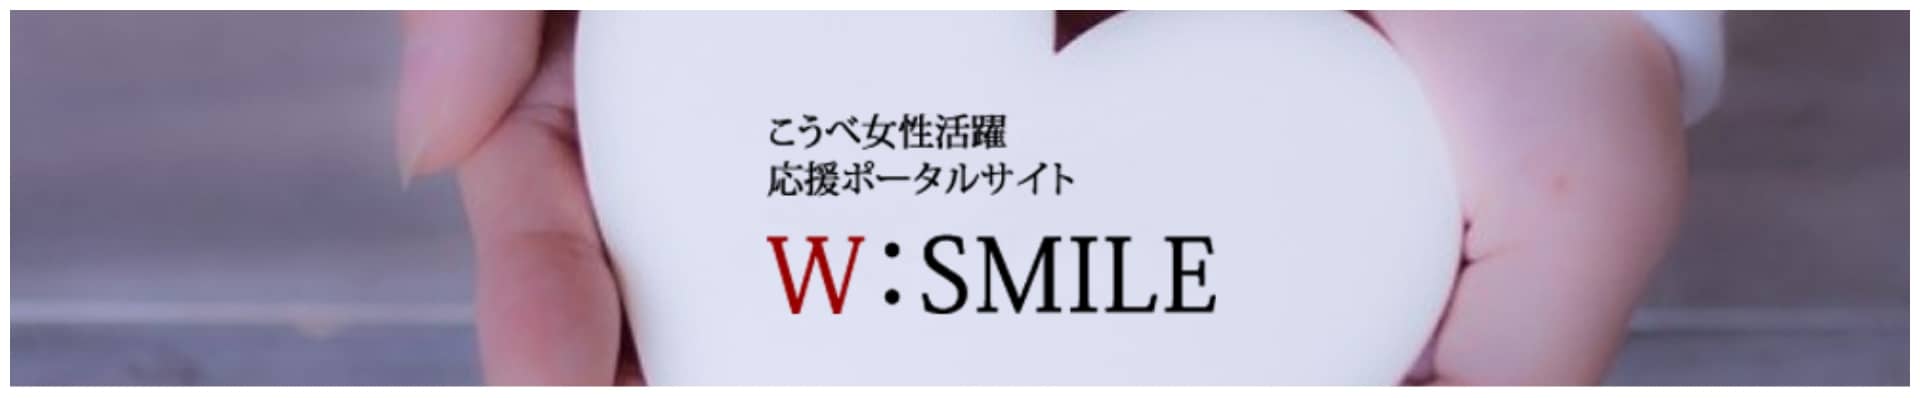 w-smile 神戸女性活躍応援サイト